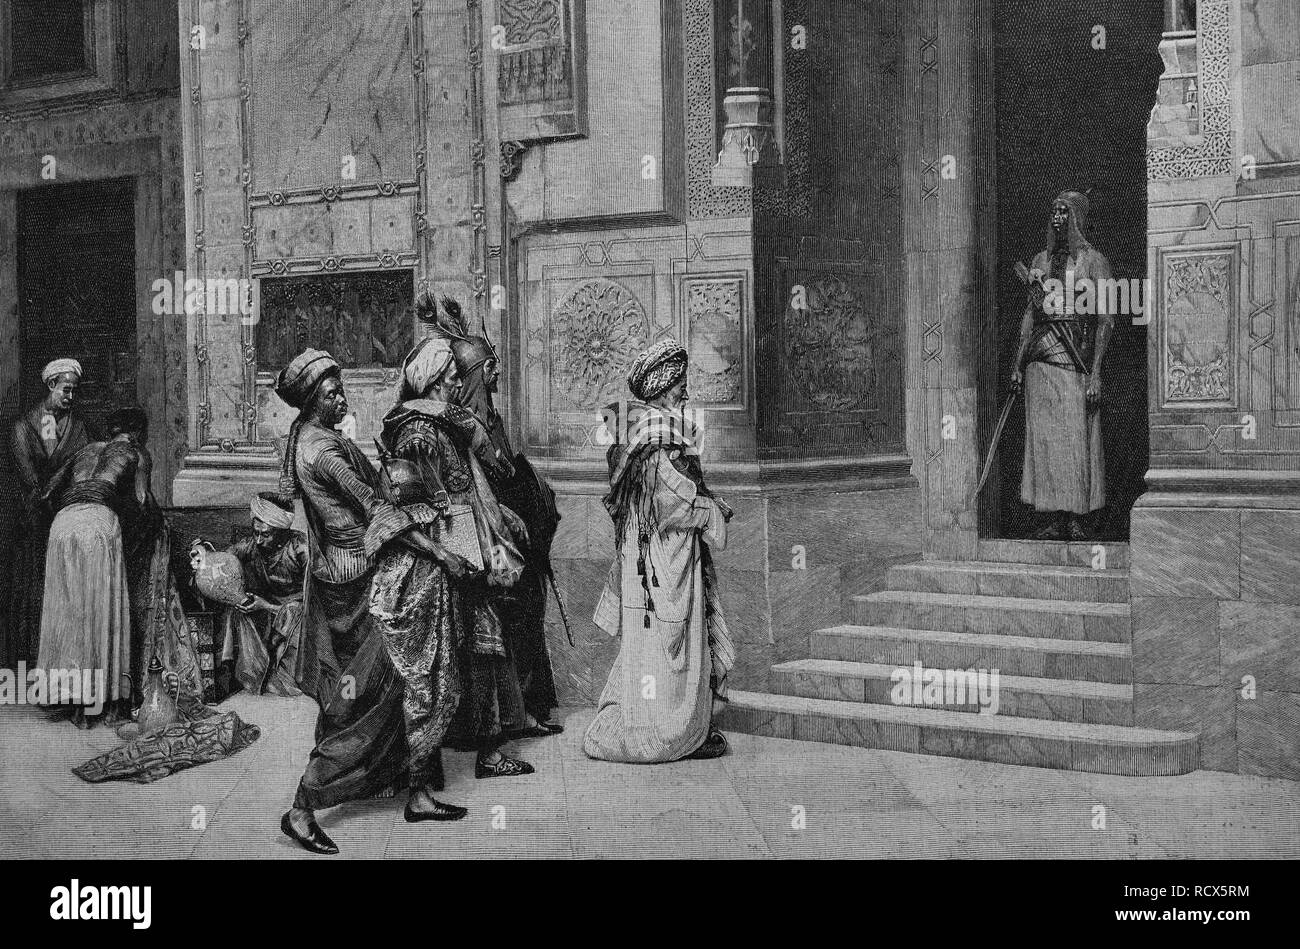 Hommes nobles rendant hommage à l'Égypte ancienne, gravure sur bois, 1888, gravure historique Banque D'Images